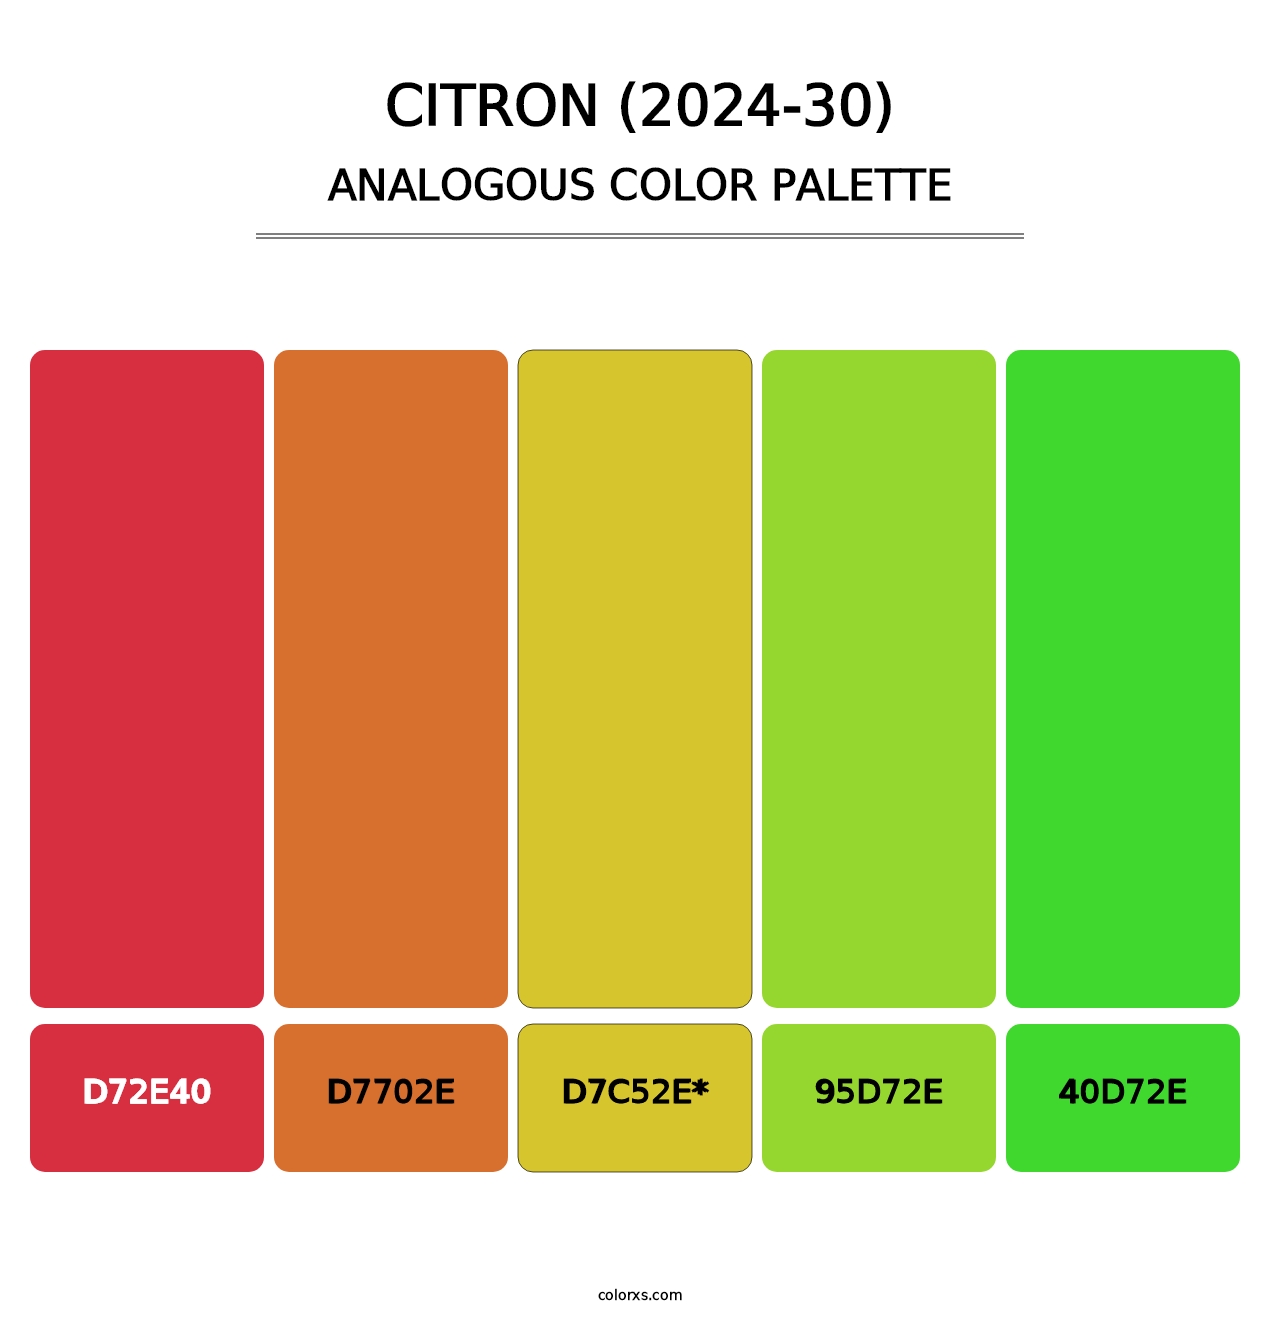 Citron (2024-30) - Analogous Color Palette